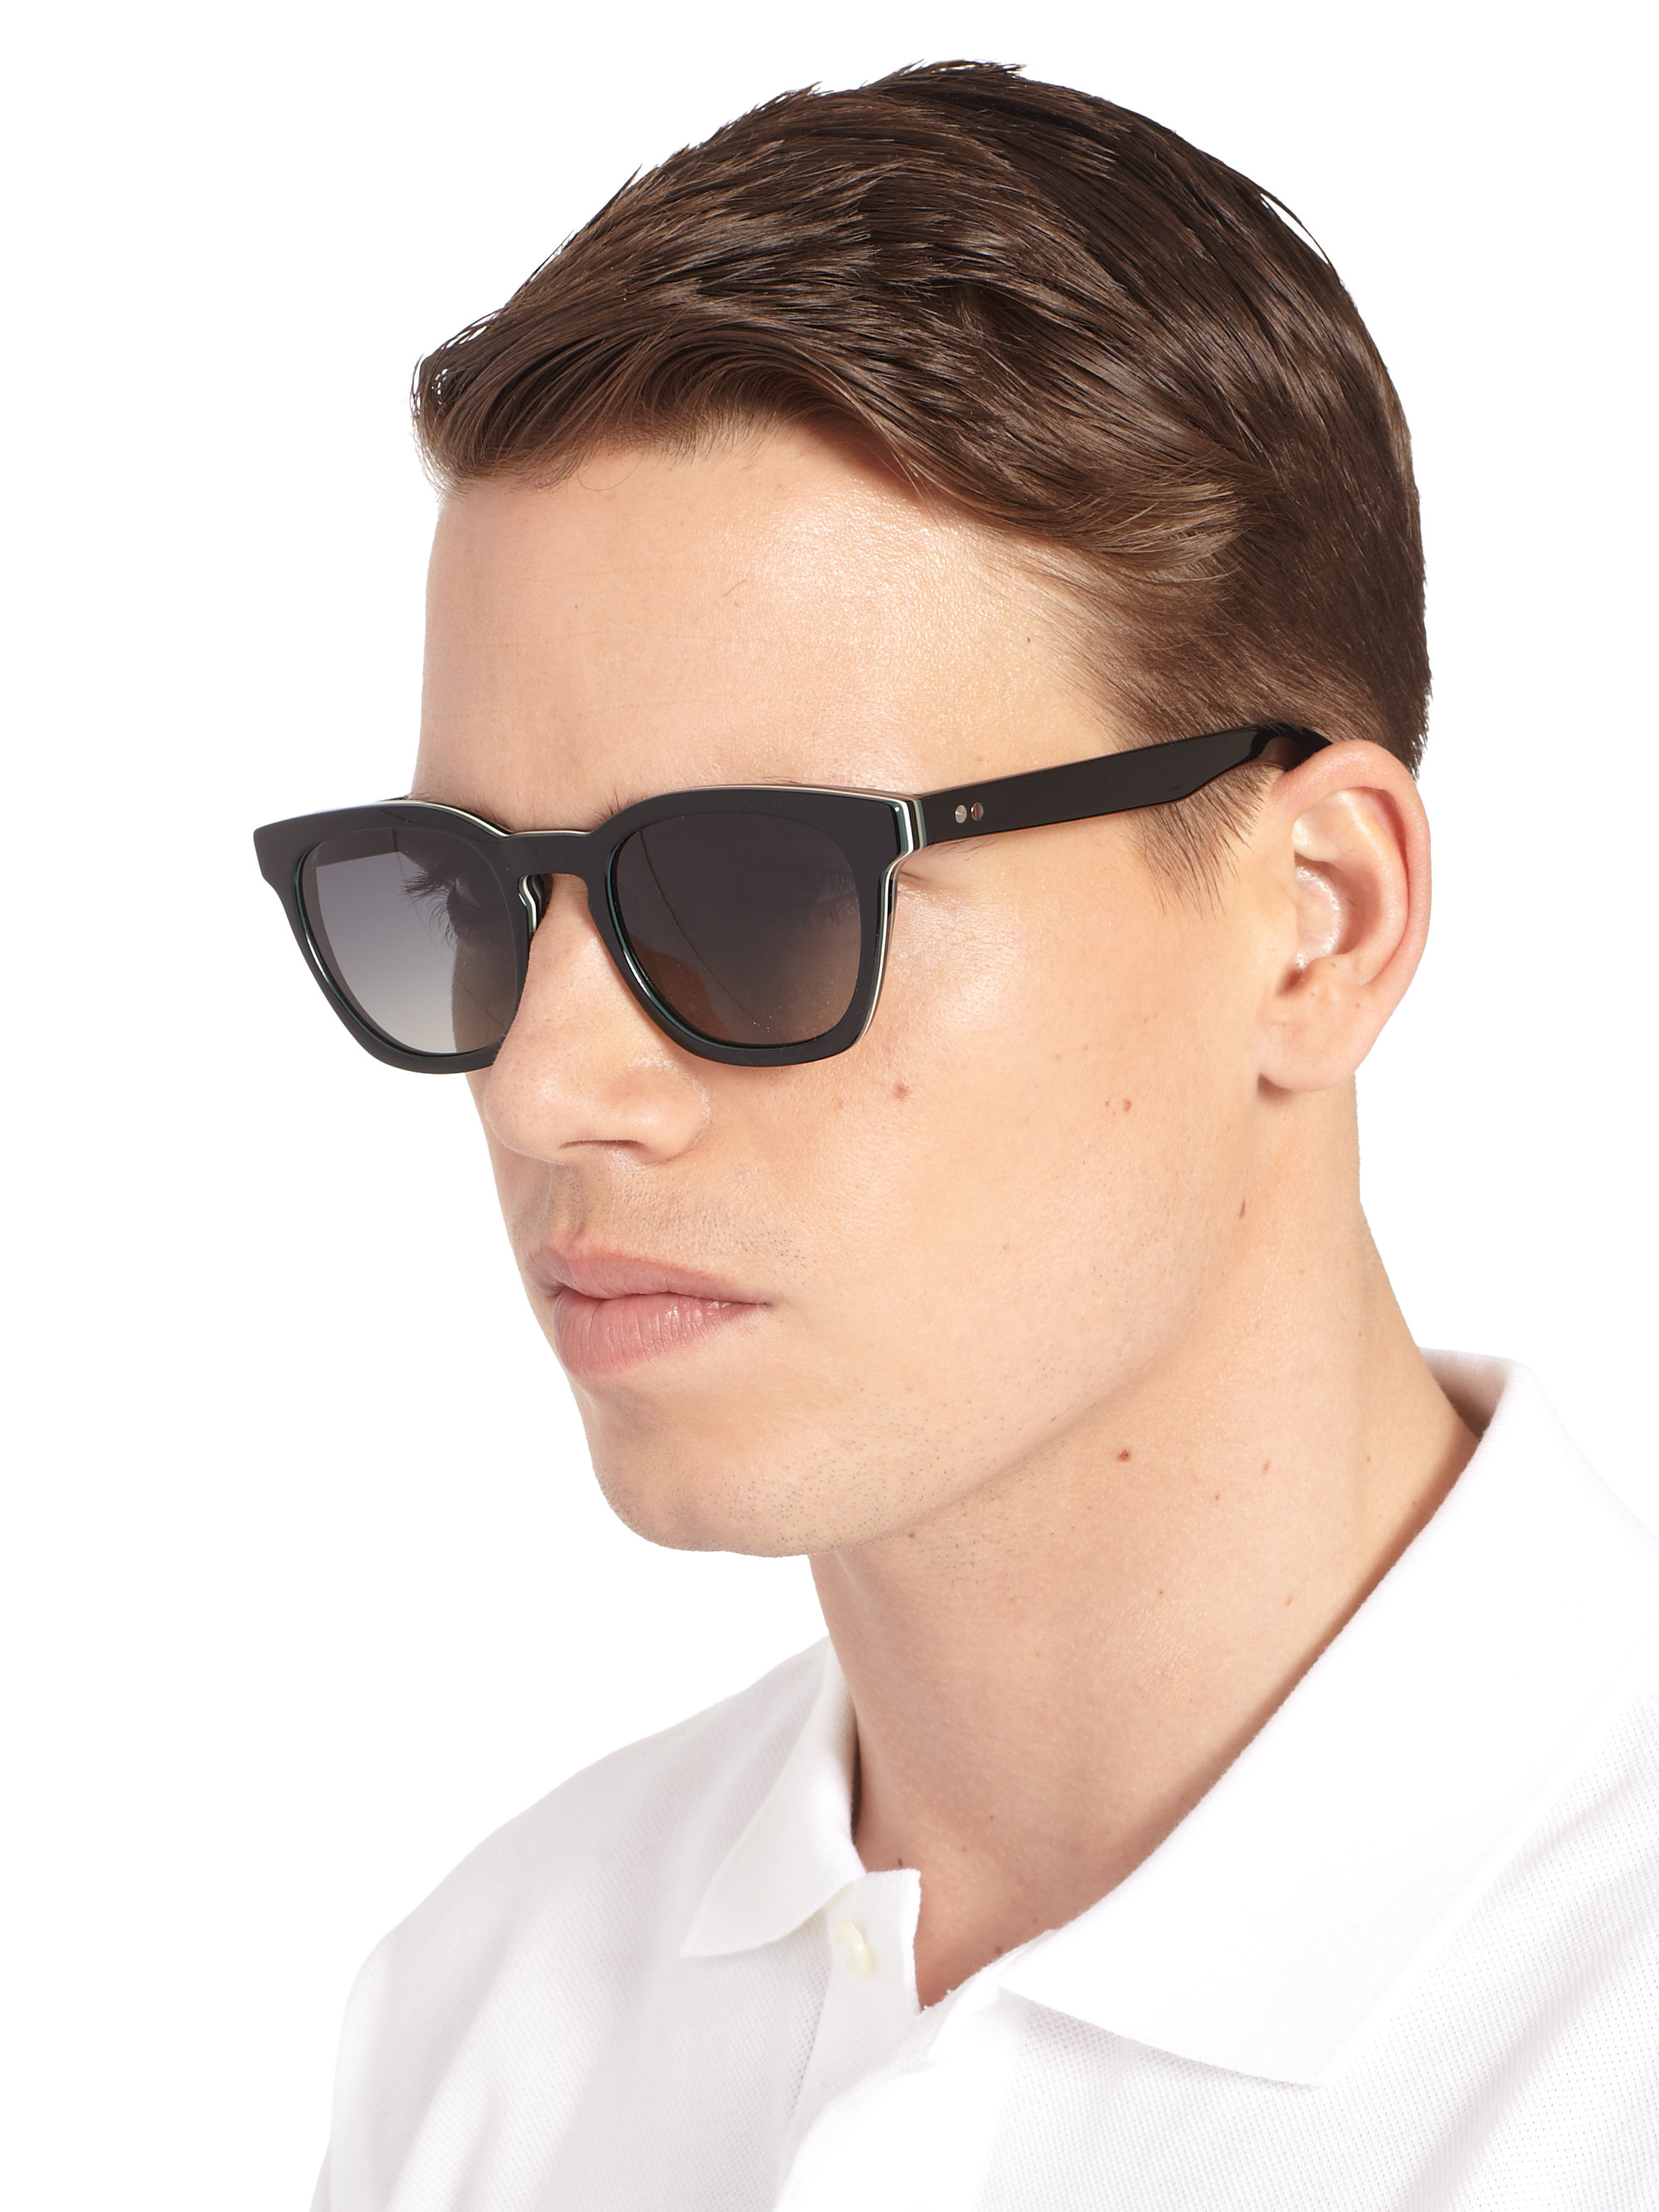 Lyst - Paul smith Rockley Wayfarer Sunglasses in Brown for Men